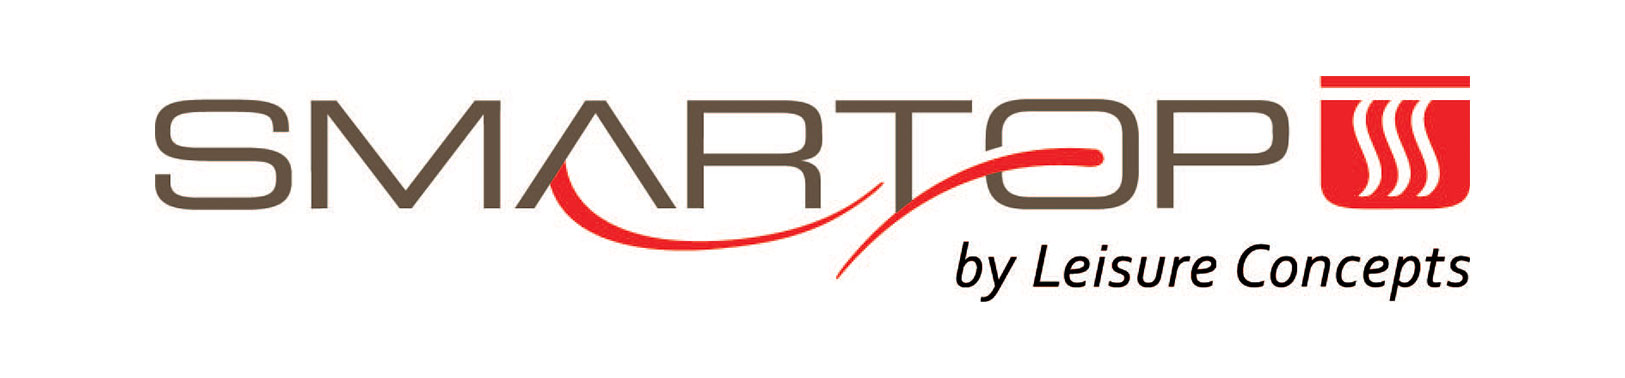 Smartop by Leisure Concepts logo